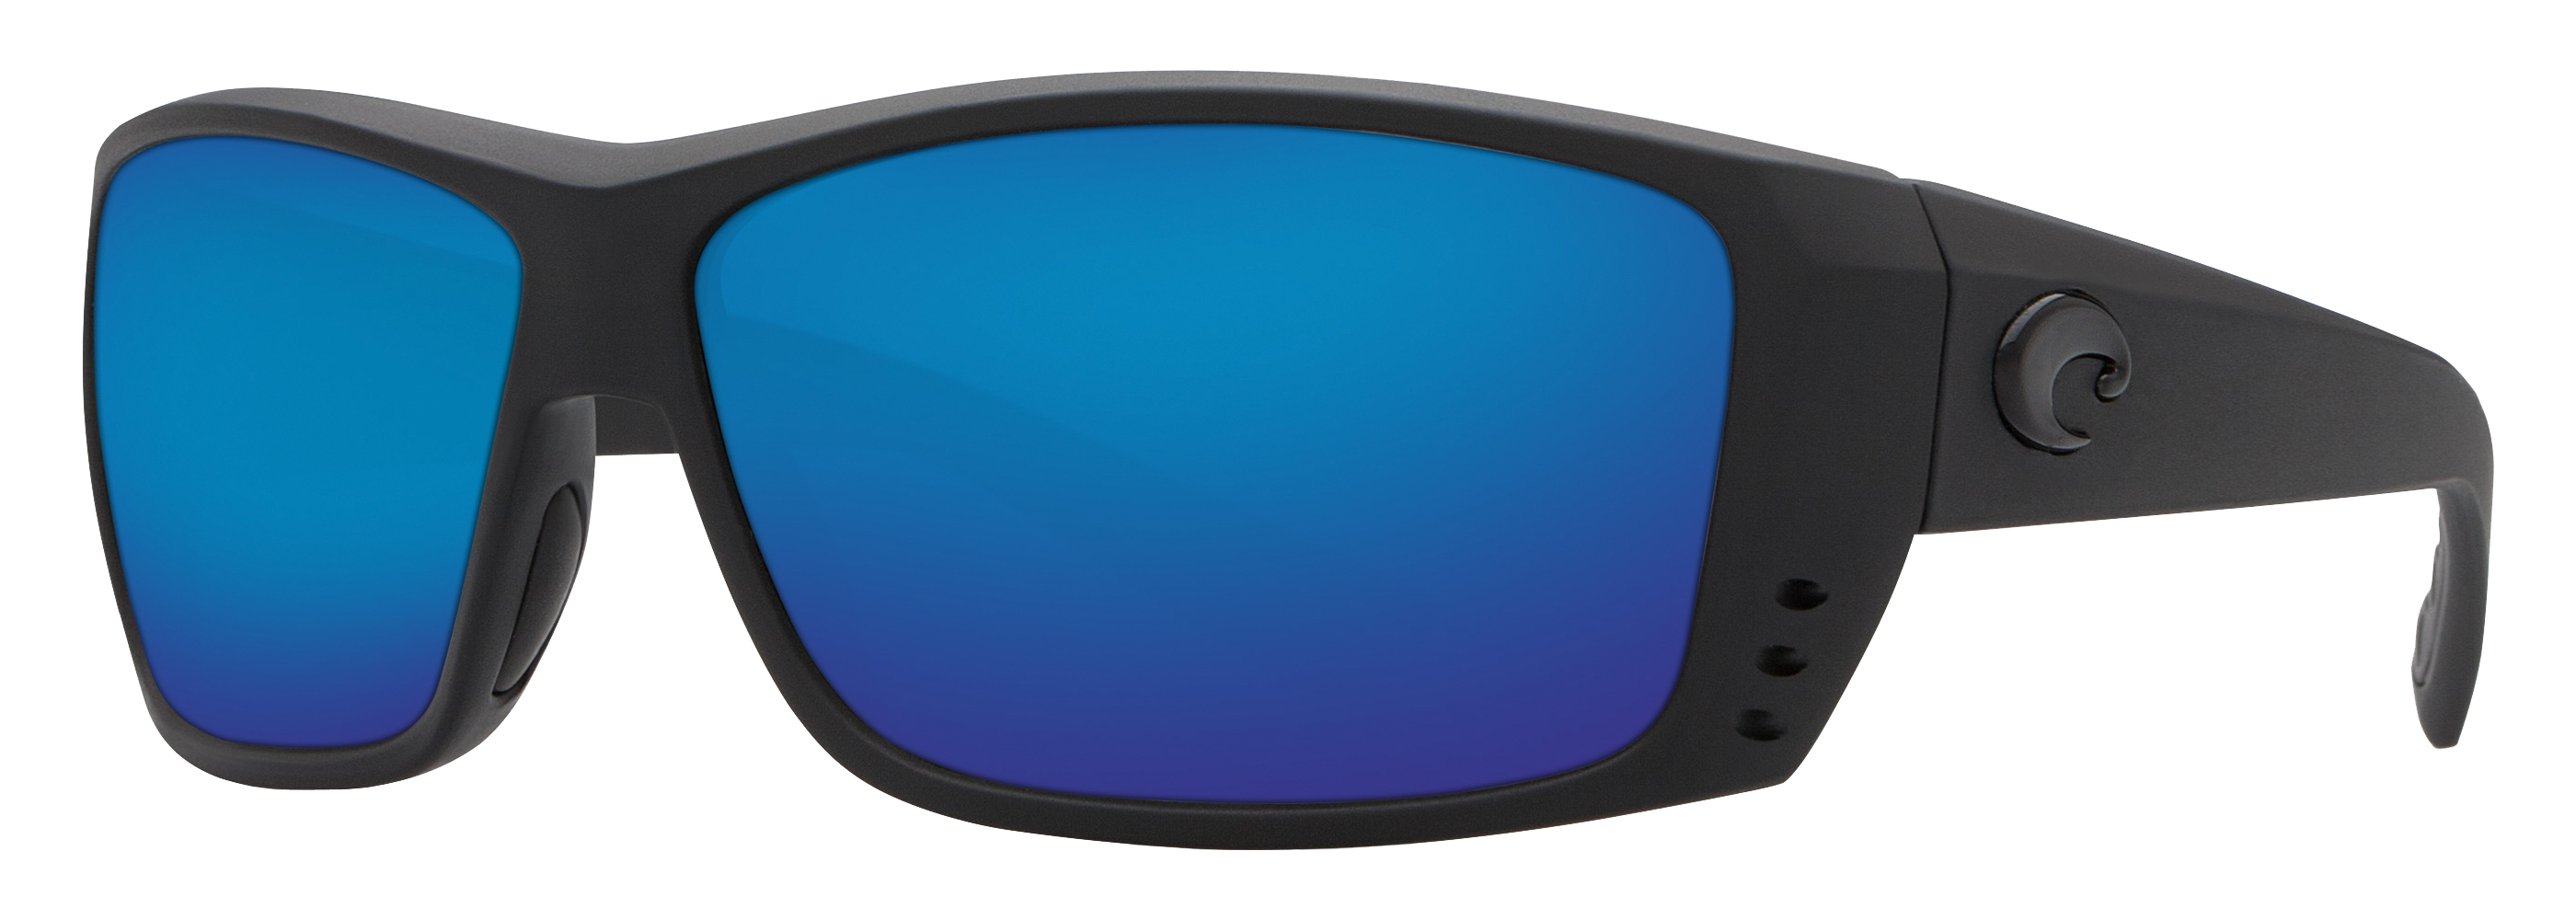 Costa Del Mar Reefton 580G Glass Polarized Sunglasses